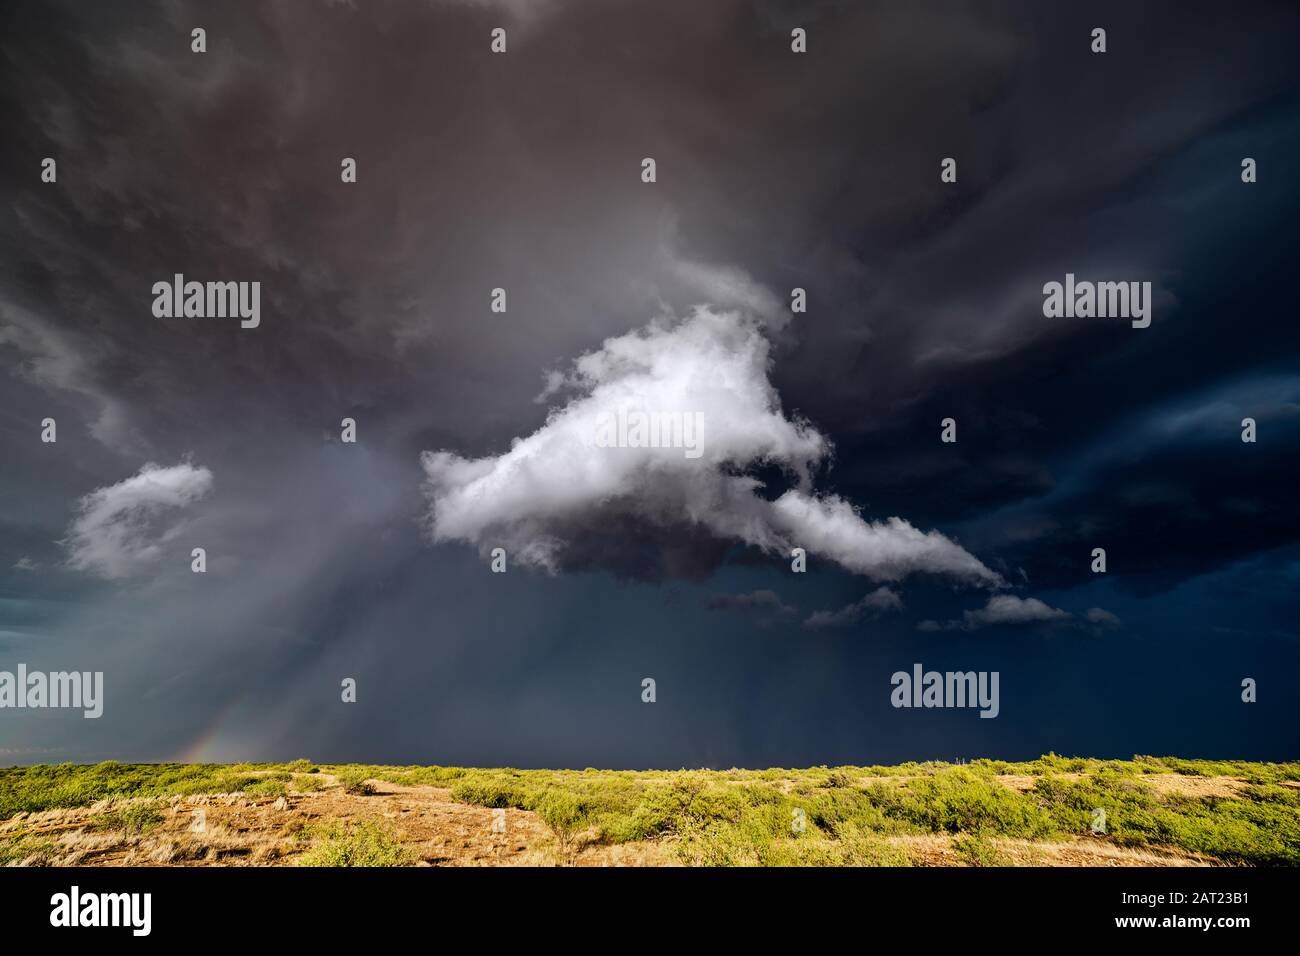 Paysage pittoresque avec des nuages d'orage sombre et inquiétant dans le ciel d'un orage Benson, Arizona Banque D'Images